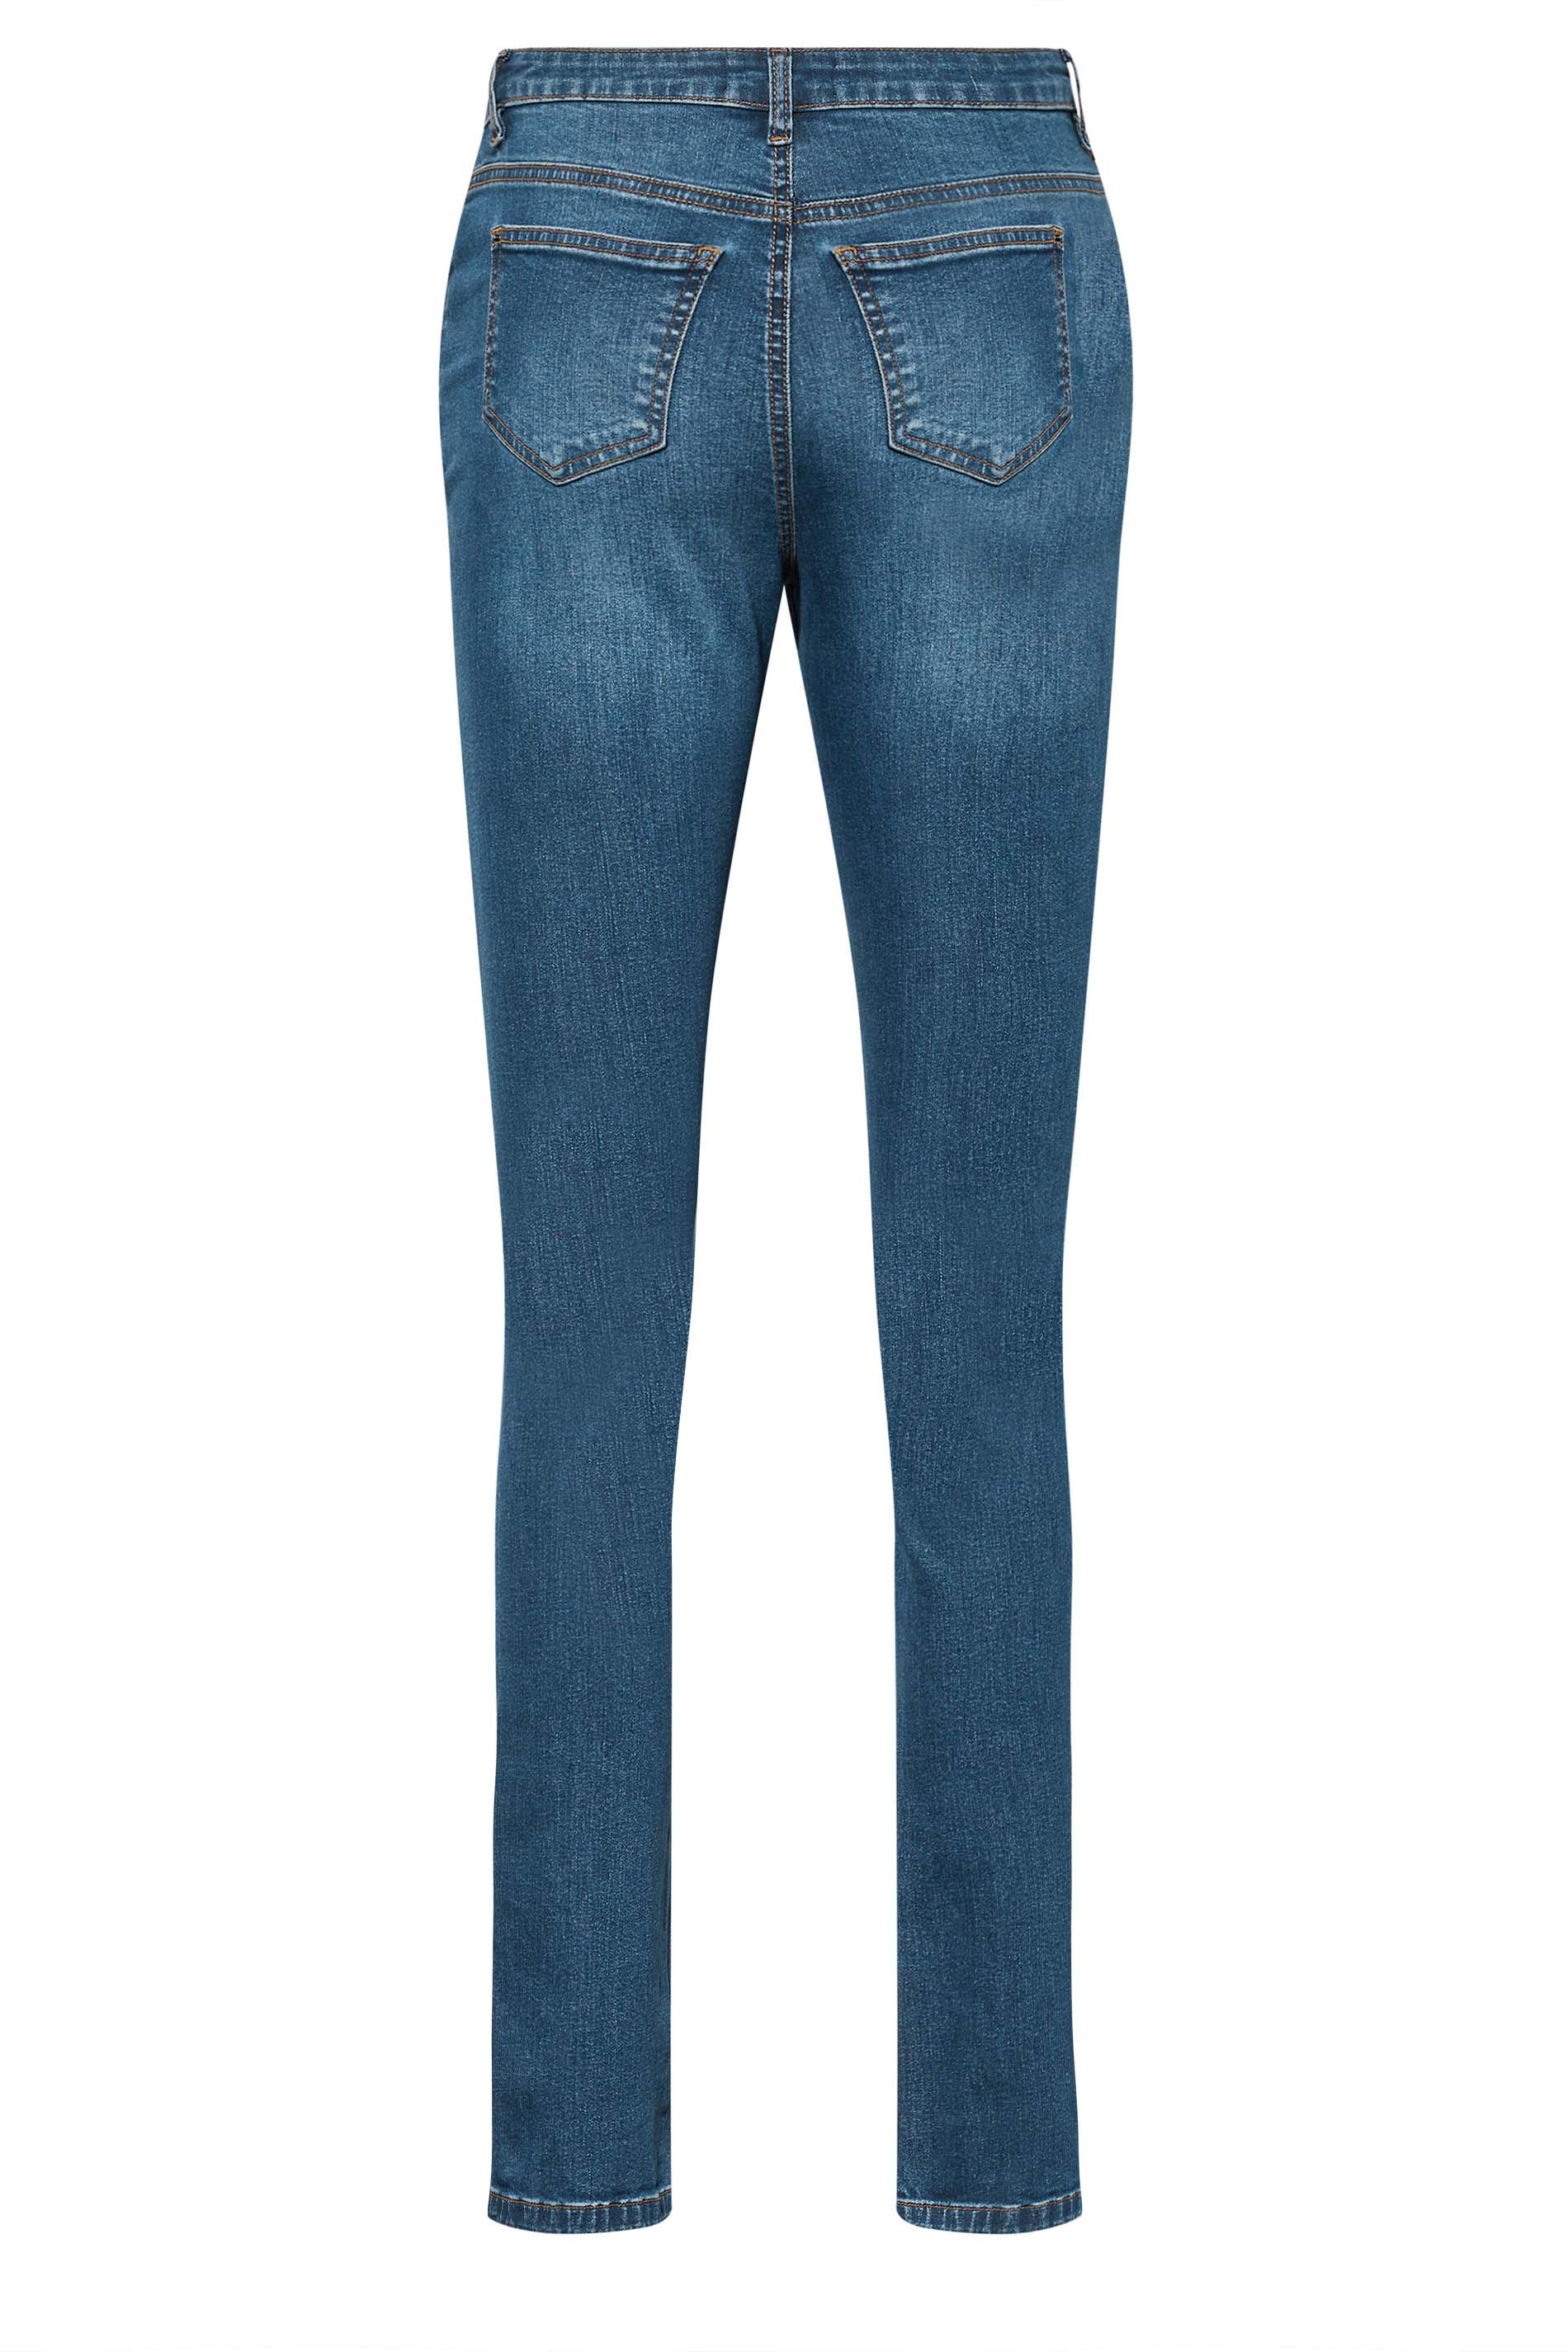 LTS Tall Women's Mid Blue MIA Slim Leg Jeans | Long Tall Sally 3